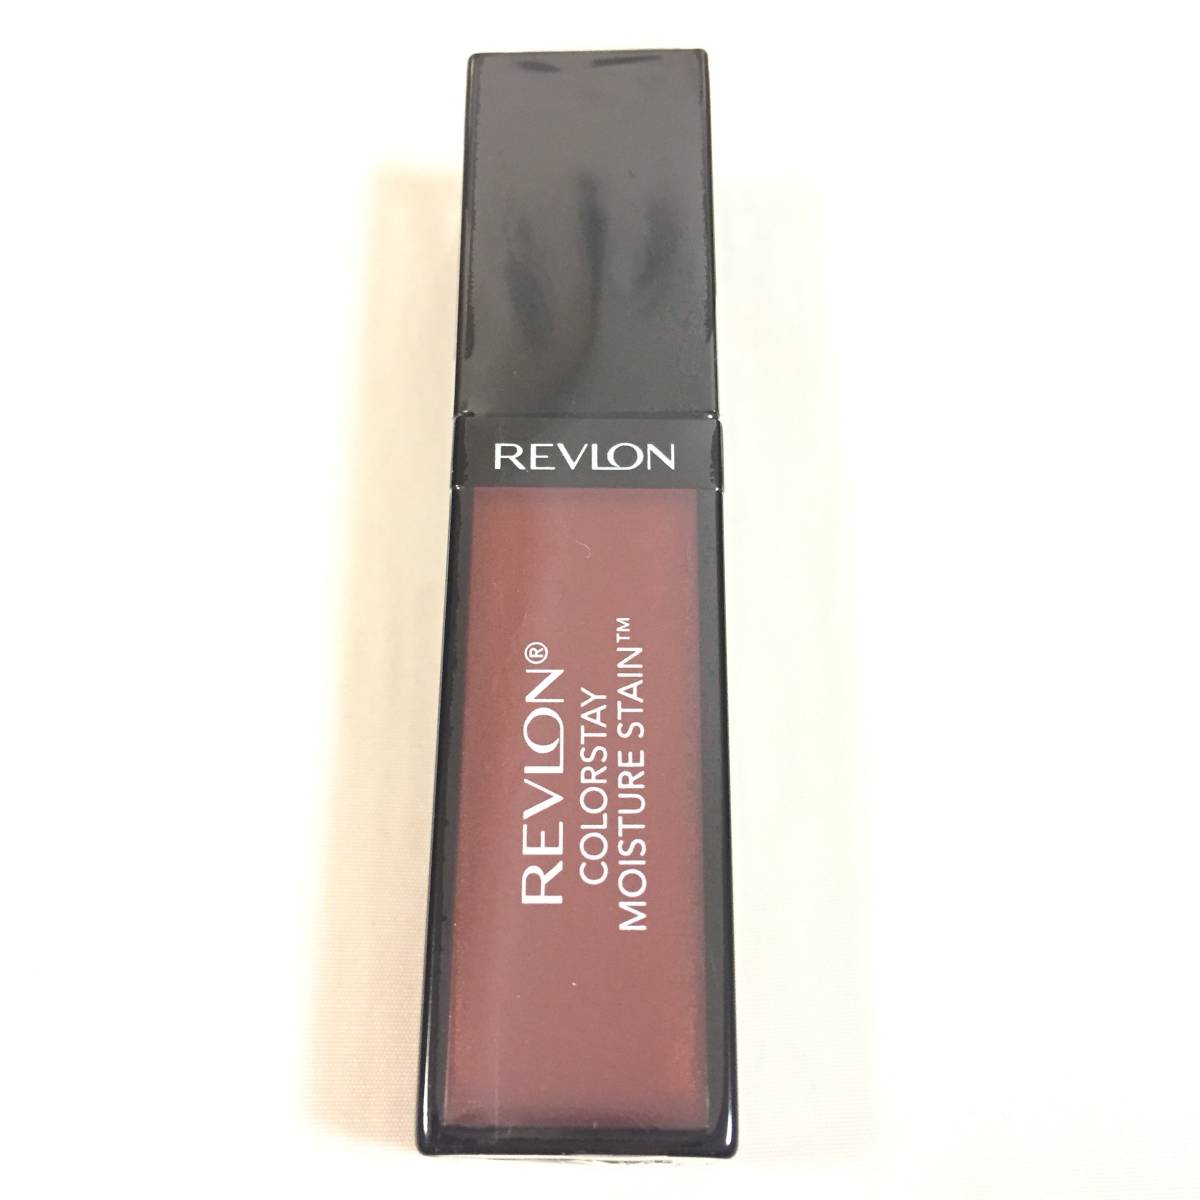  новый товар ограничение *REVLON ( Revlon ) цвет стойка mo стул коричневый - stain 55 ( "губа" цвет )*